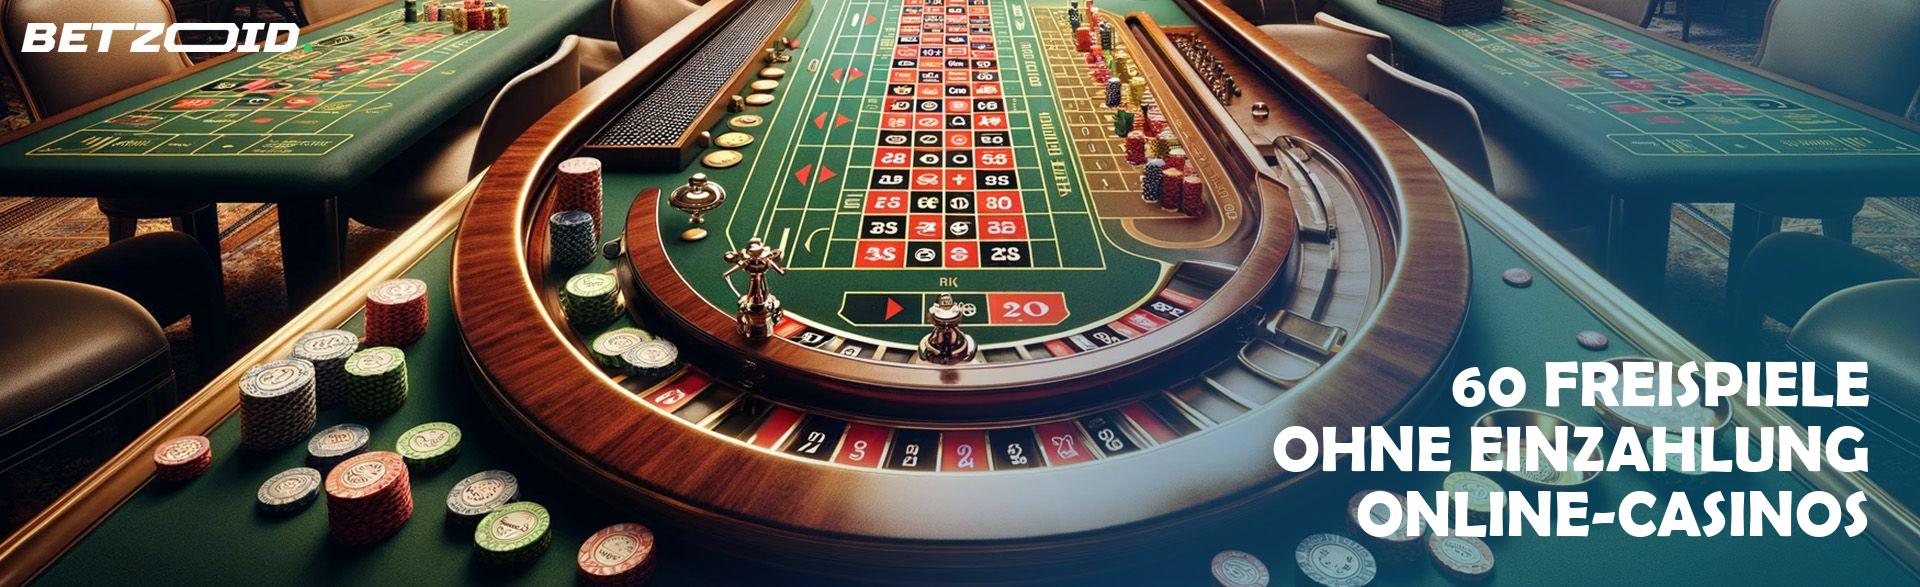 3 Wege, Online Casino zu meistern, ohne ins Schwitzen zu geraten